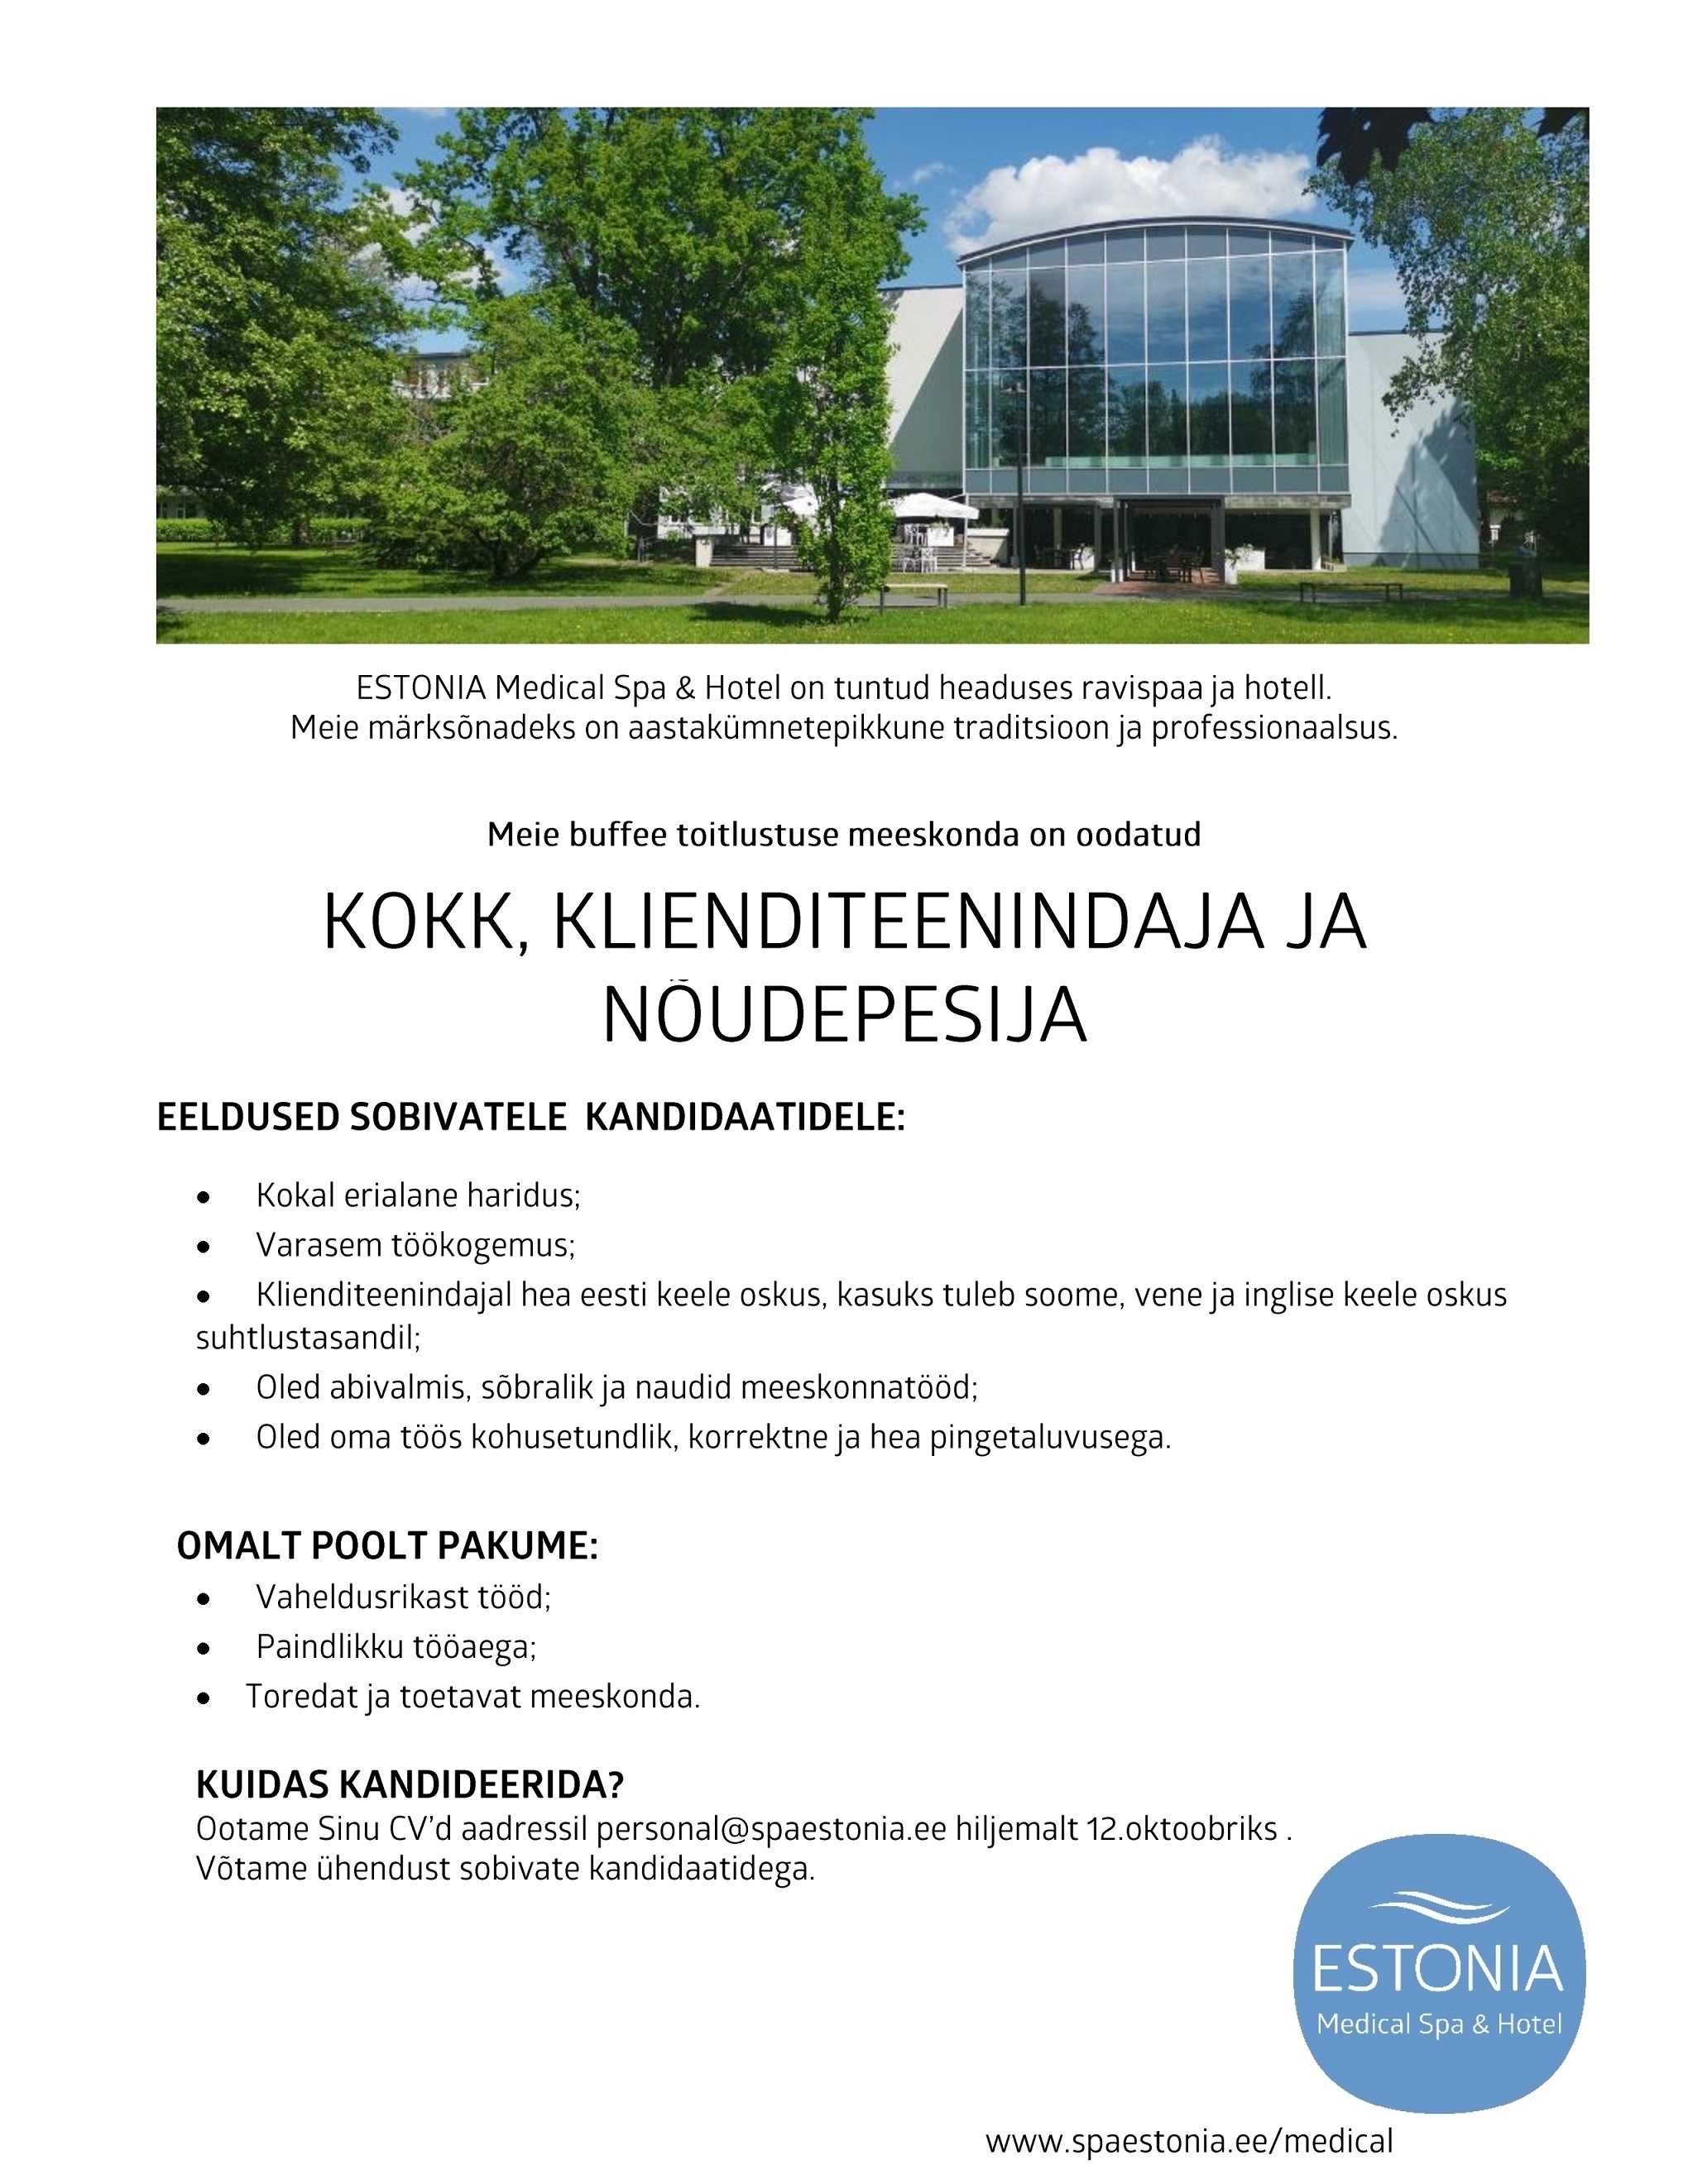 Estonia Spa Hotels AS Kokk, klienditeenindaja, nõudepesija buffee toitlustuses Estonia Spa Hotels´is